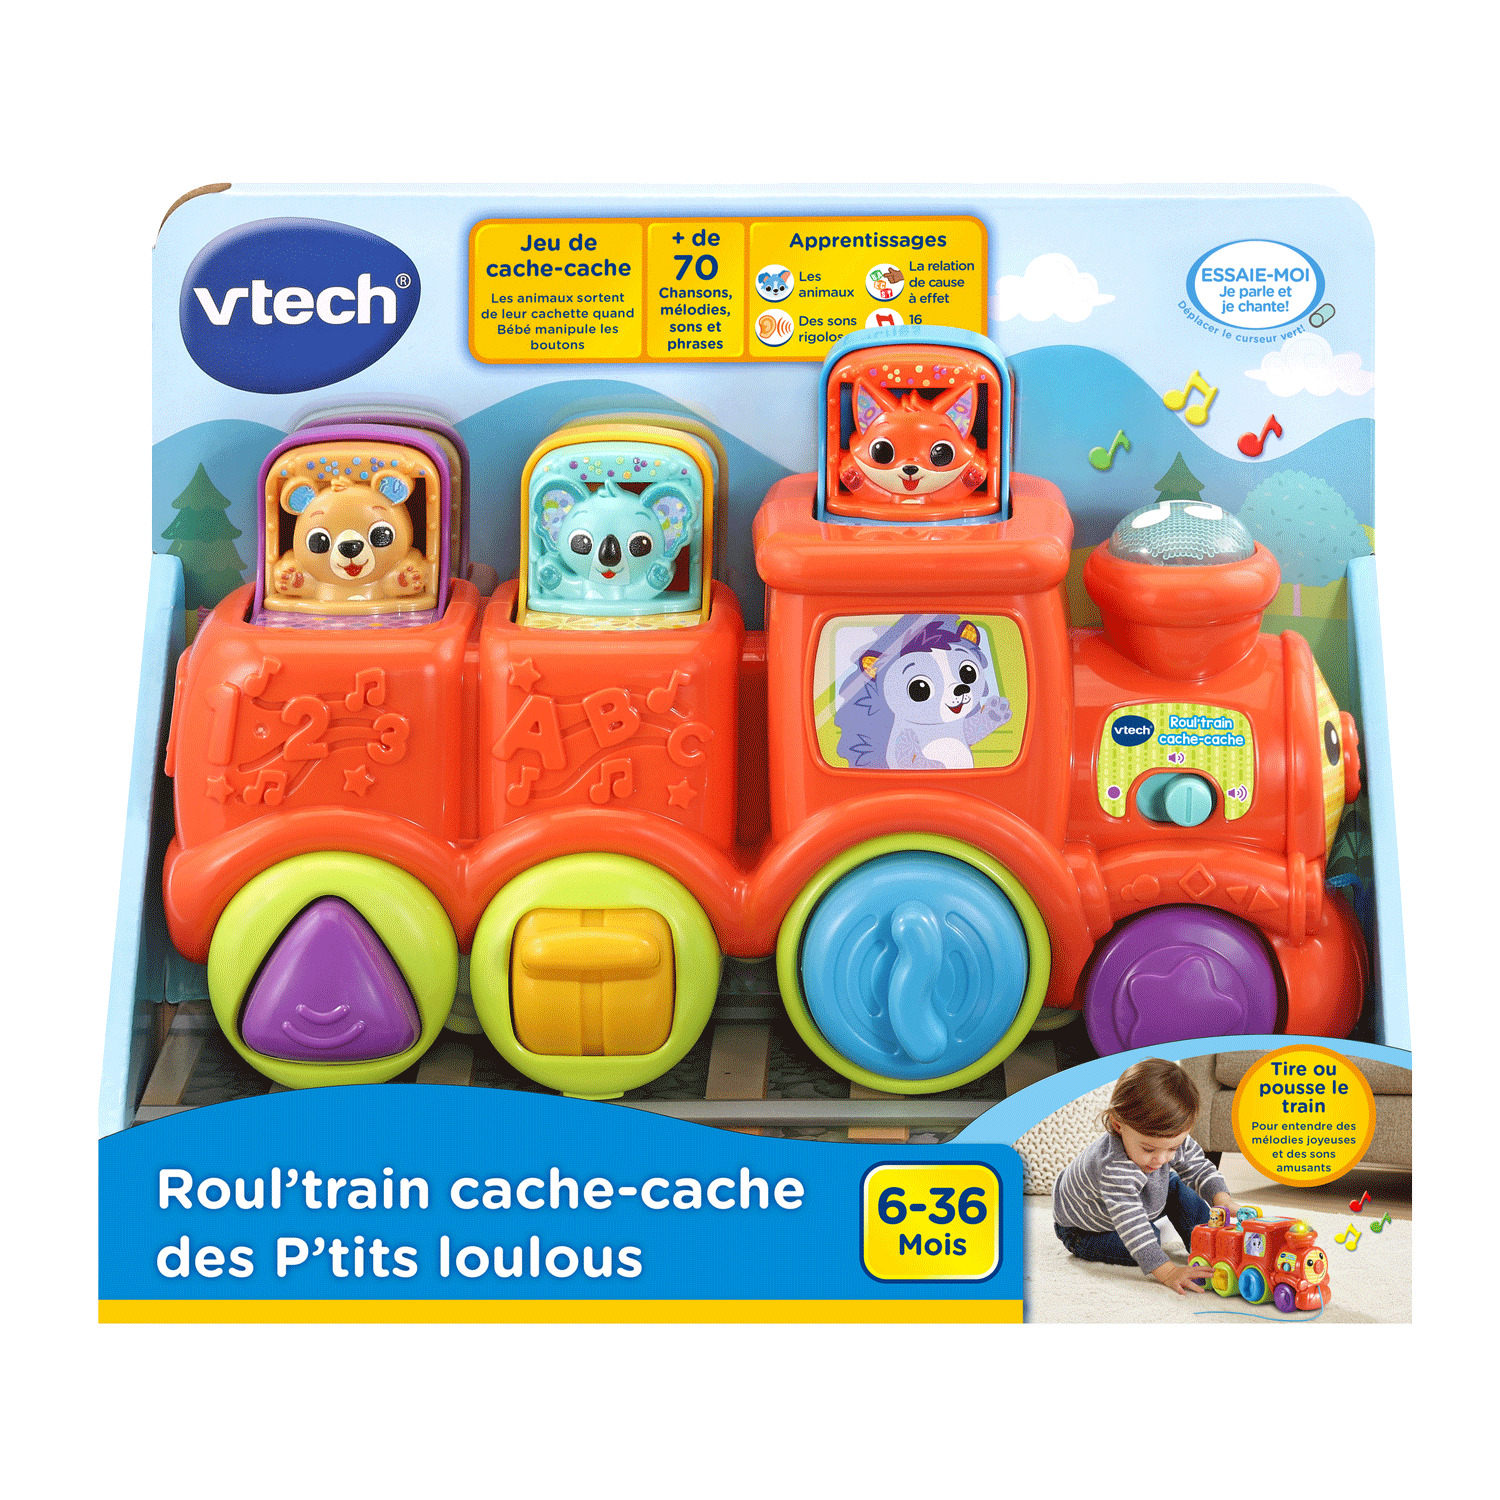 VTech - Roul'train cache-cache des P'tits loulous, édition française